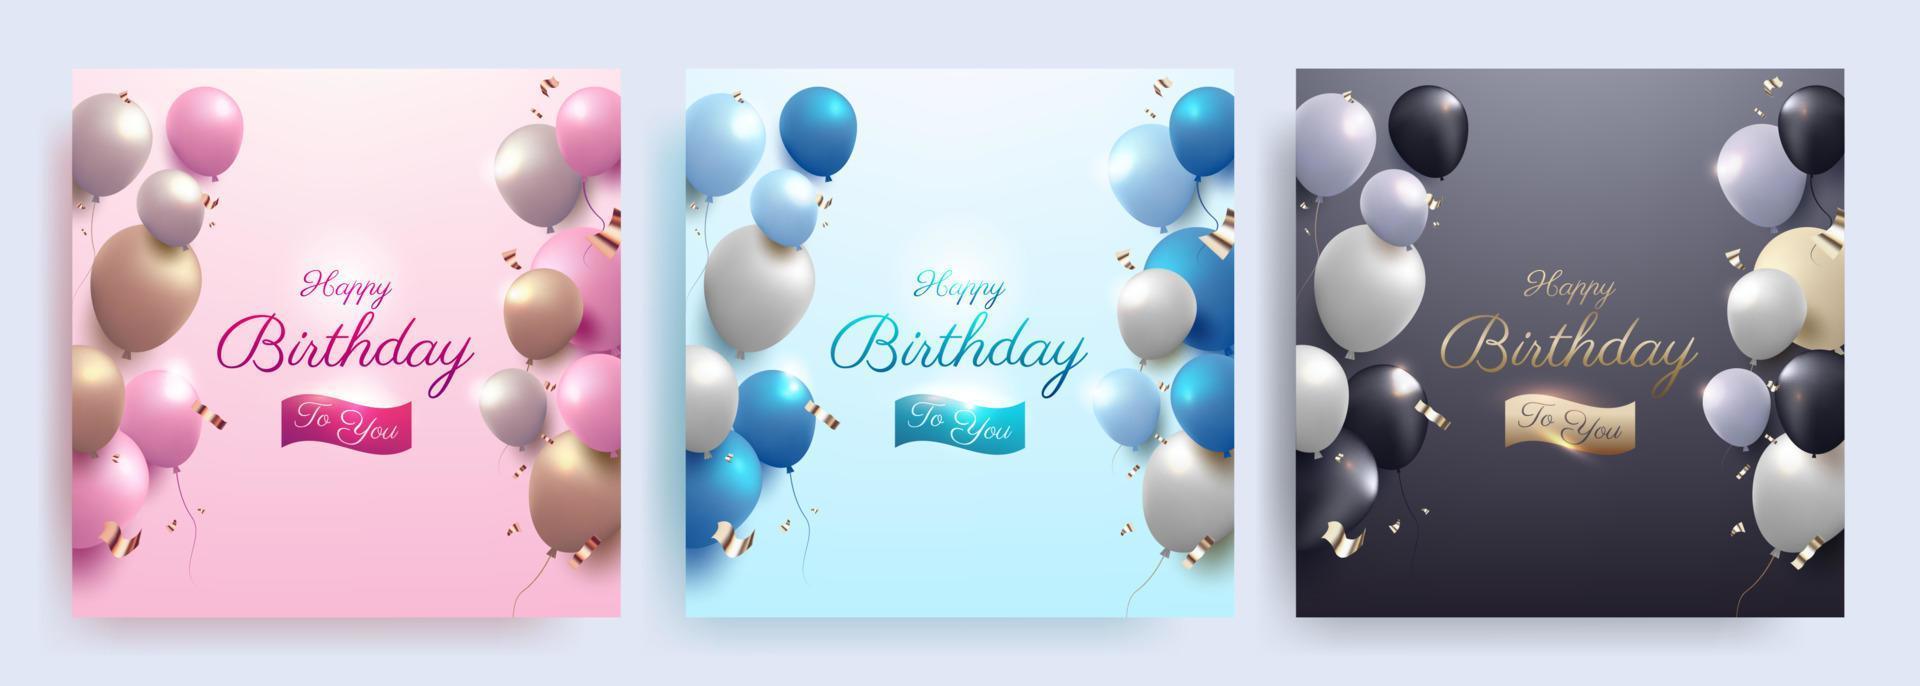 conjunto de banner de celebración de feliz cumpleaños con globos de colores realistas para publicación en redes sociales vector